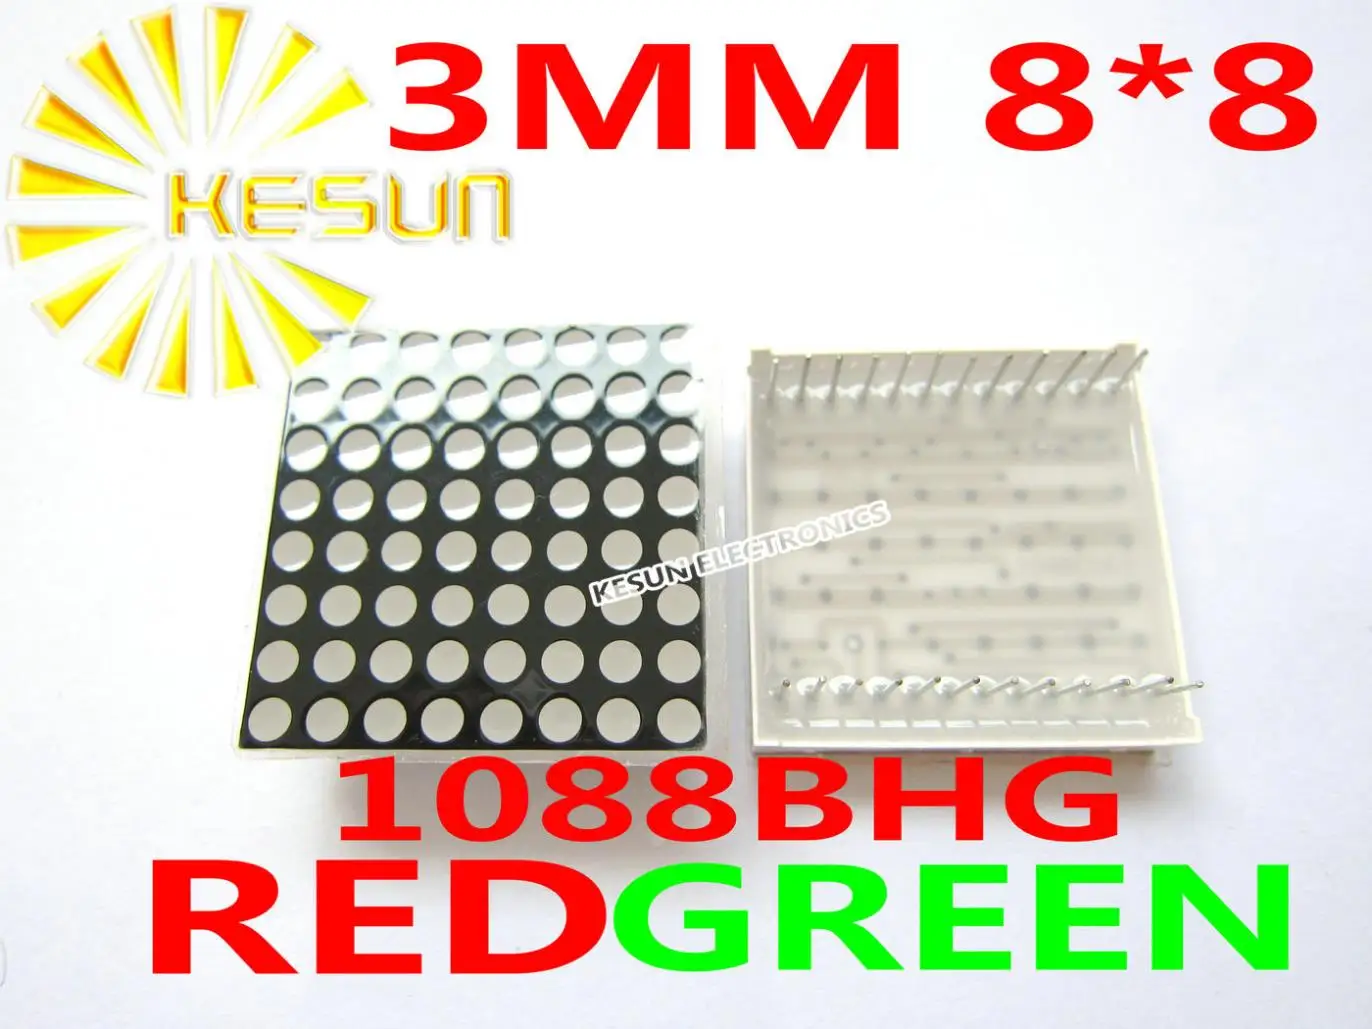 50 шт. x 3 мм 8X8 красный зеленый двухцветный общий анод 32*32 светодиодный точечный